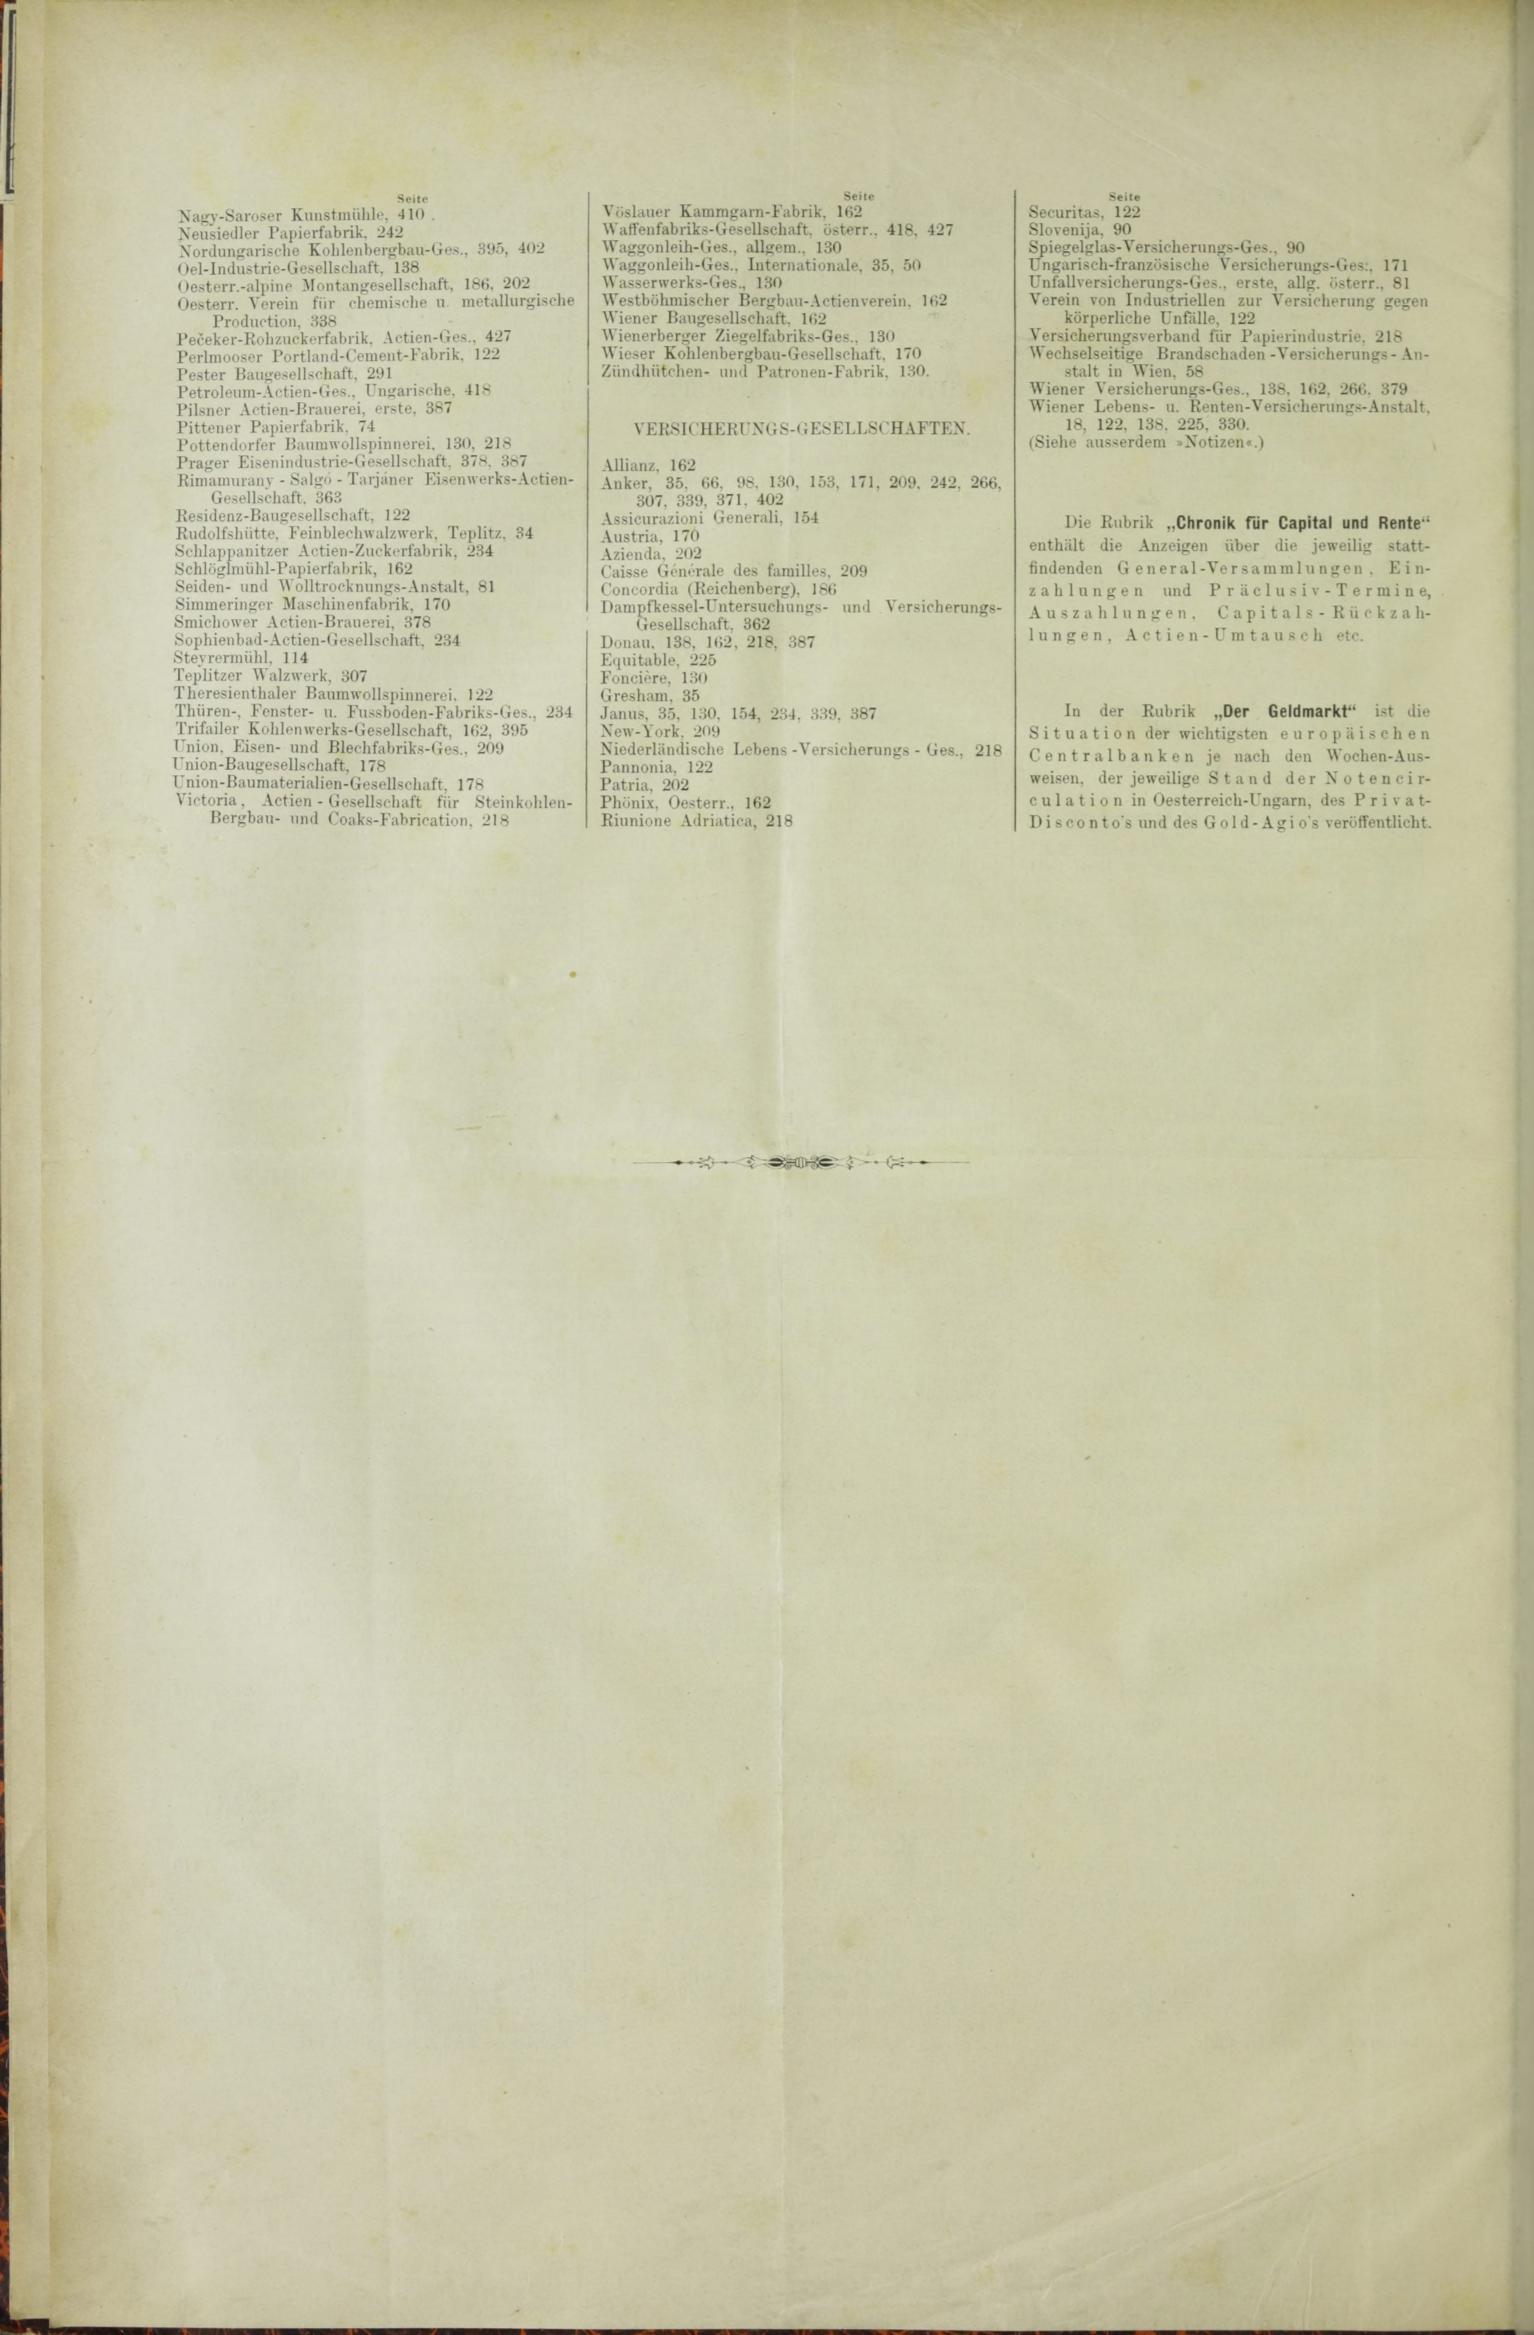 Der Tresor 16.04.1885 - Seite 12